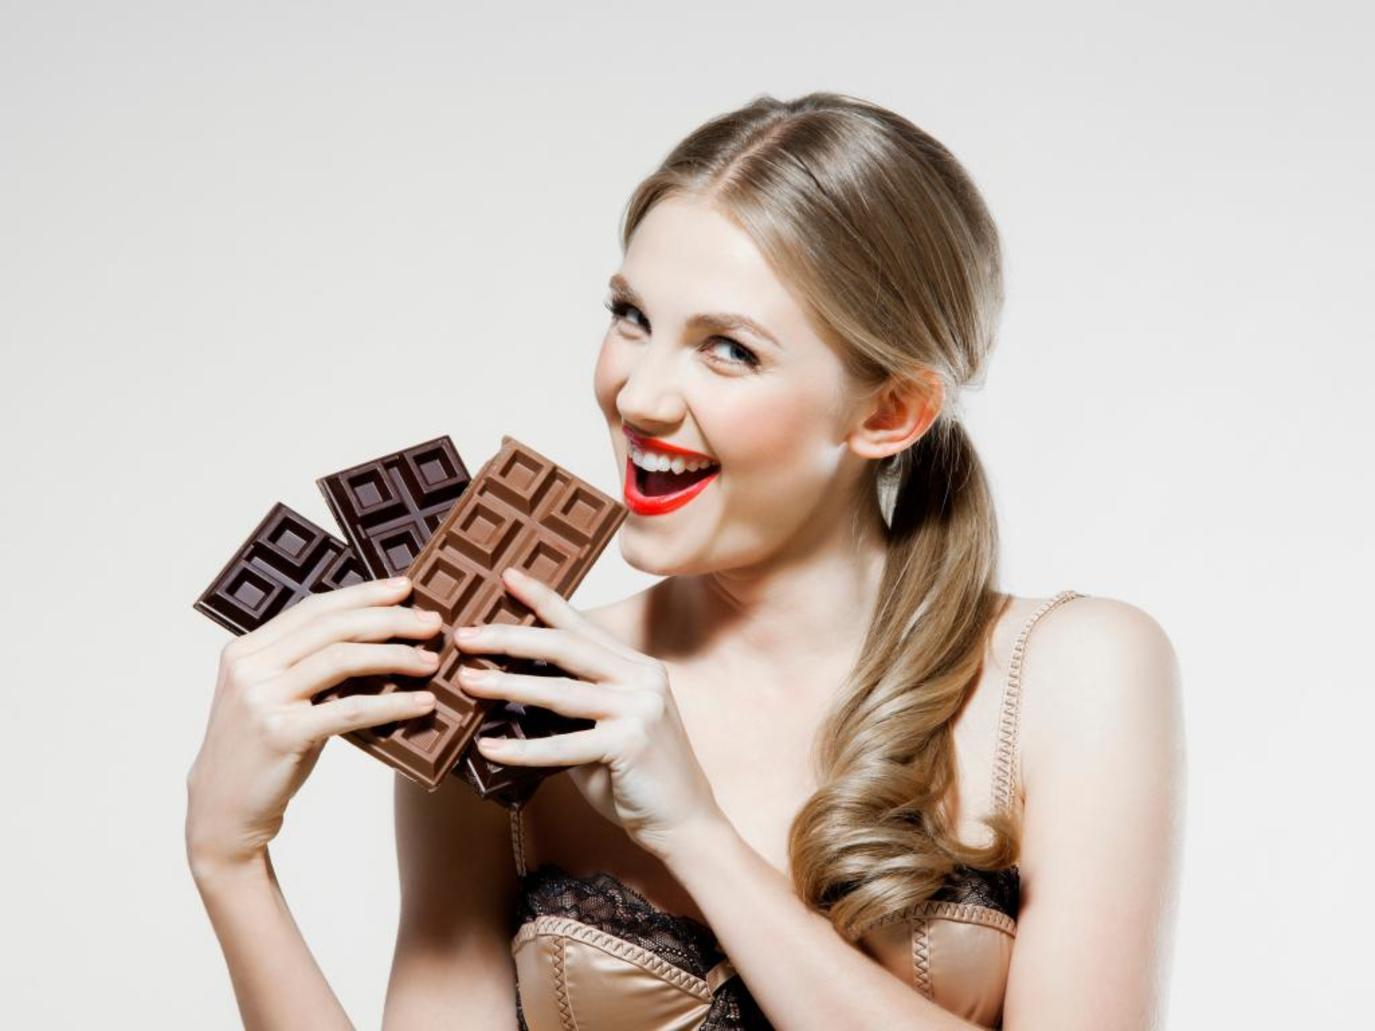 مختصة: توضح تأثير الشوكولاتة على الزوجين أثناء العلاقة الحميمة